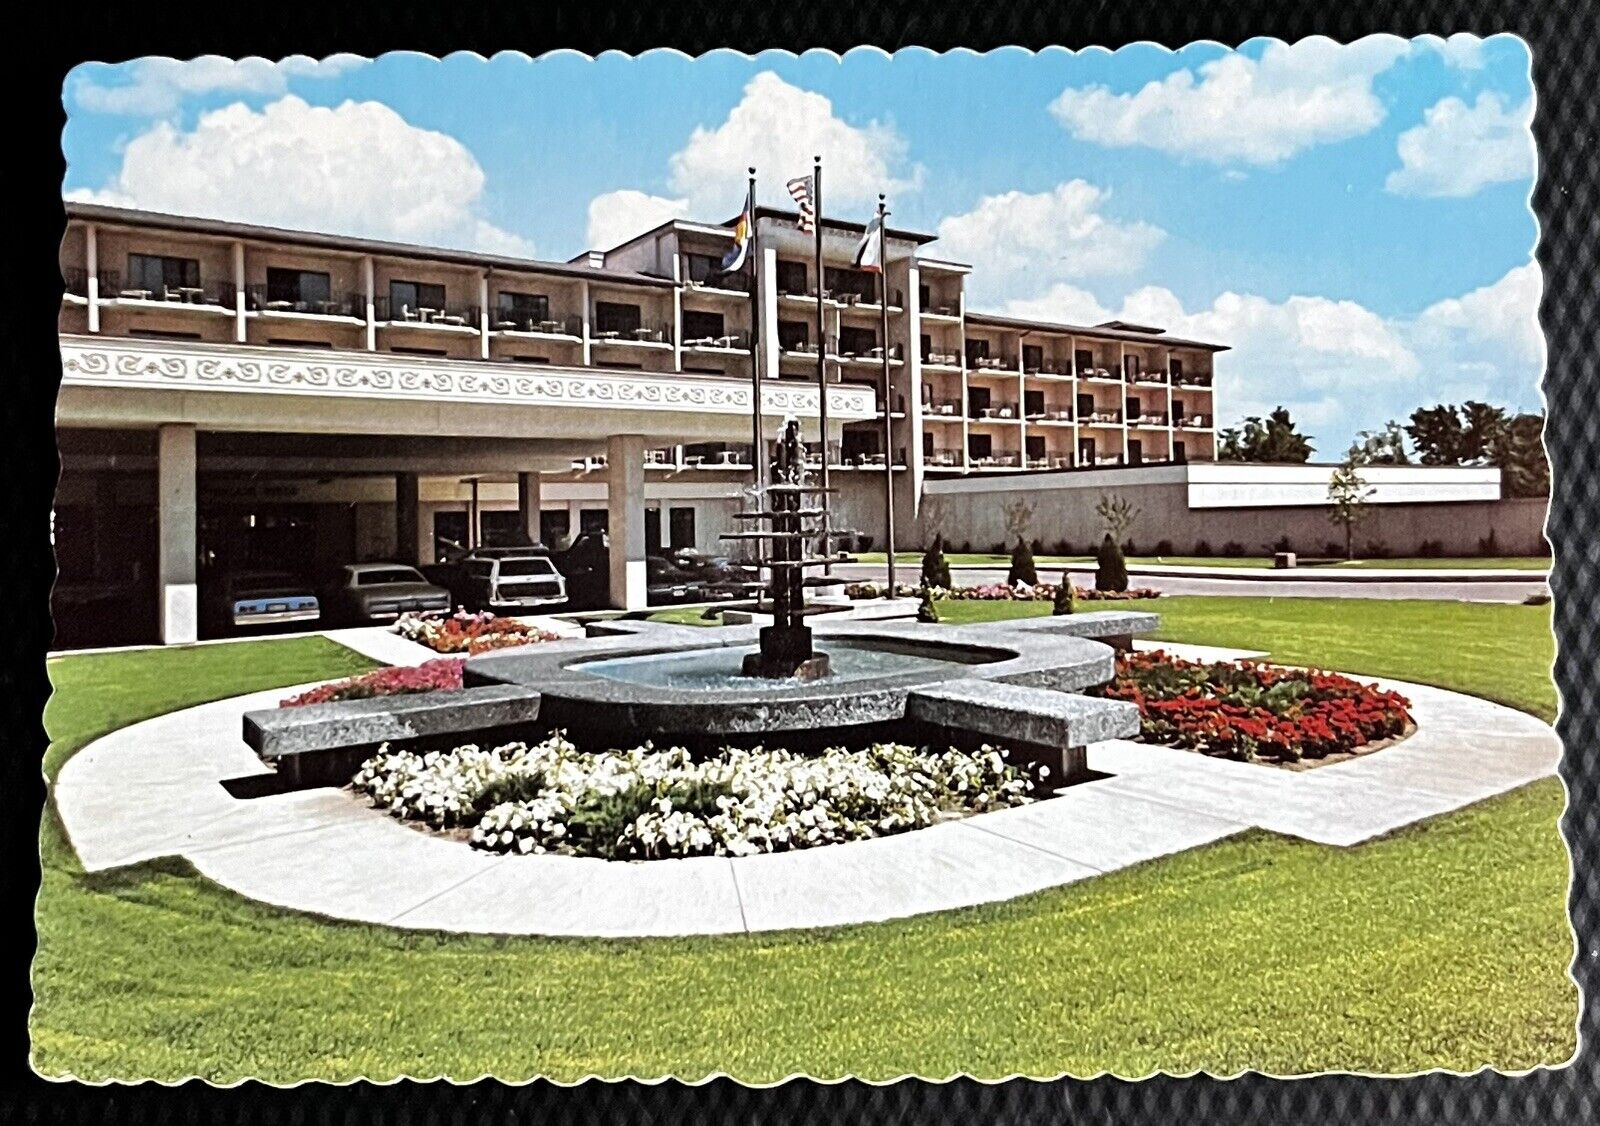 Broadmoor West Resort Hotel, Colorado Springs, Colorado Vintage Postcard 